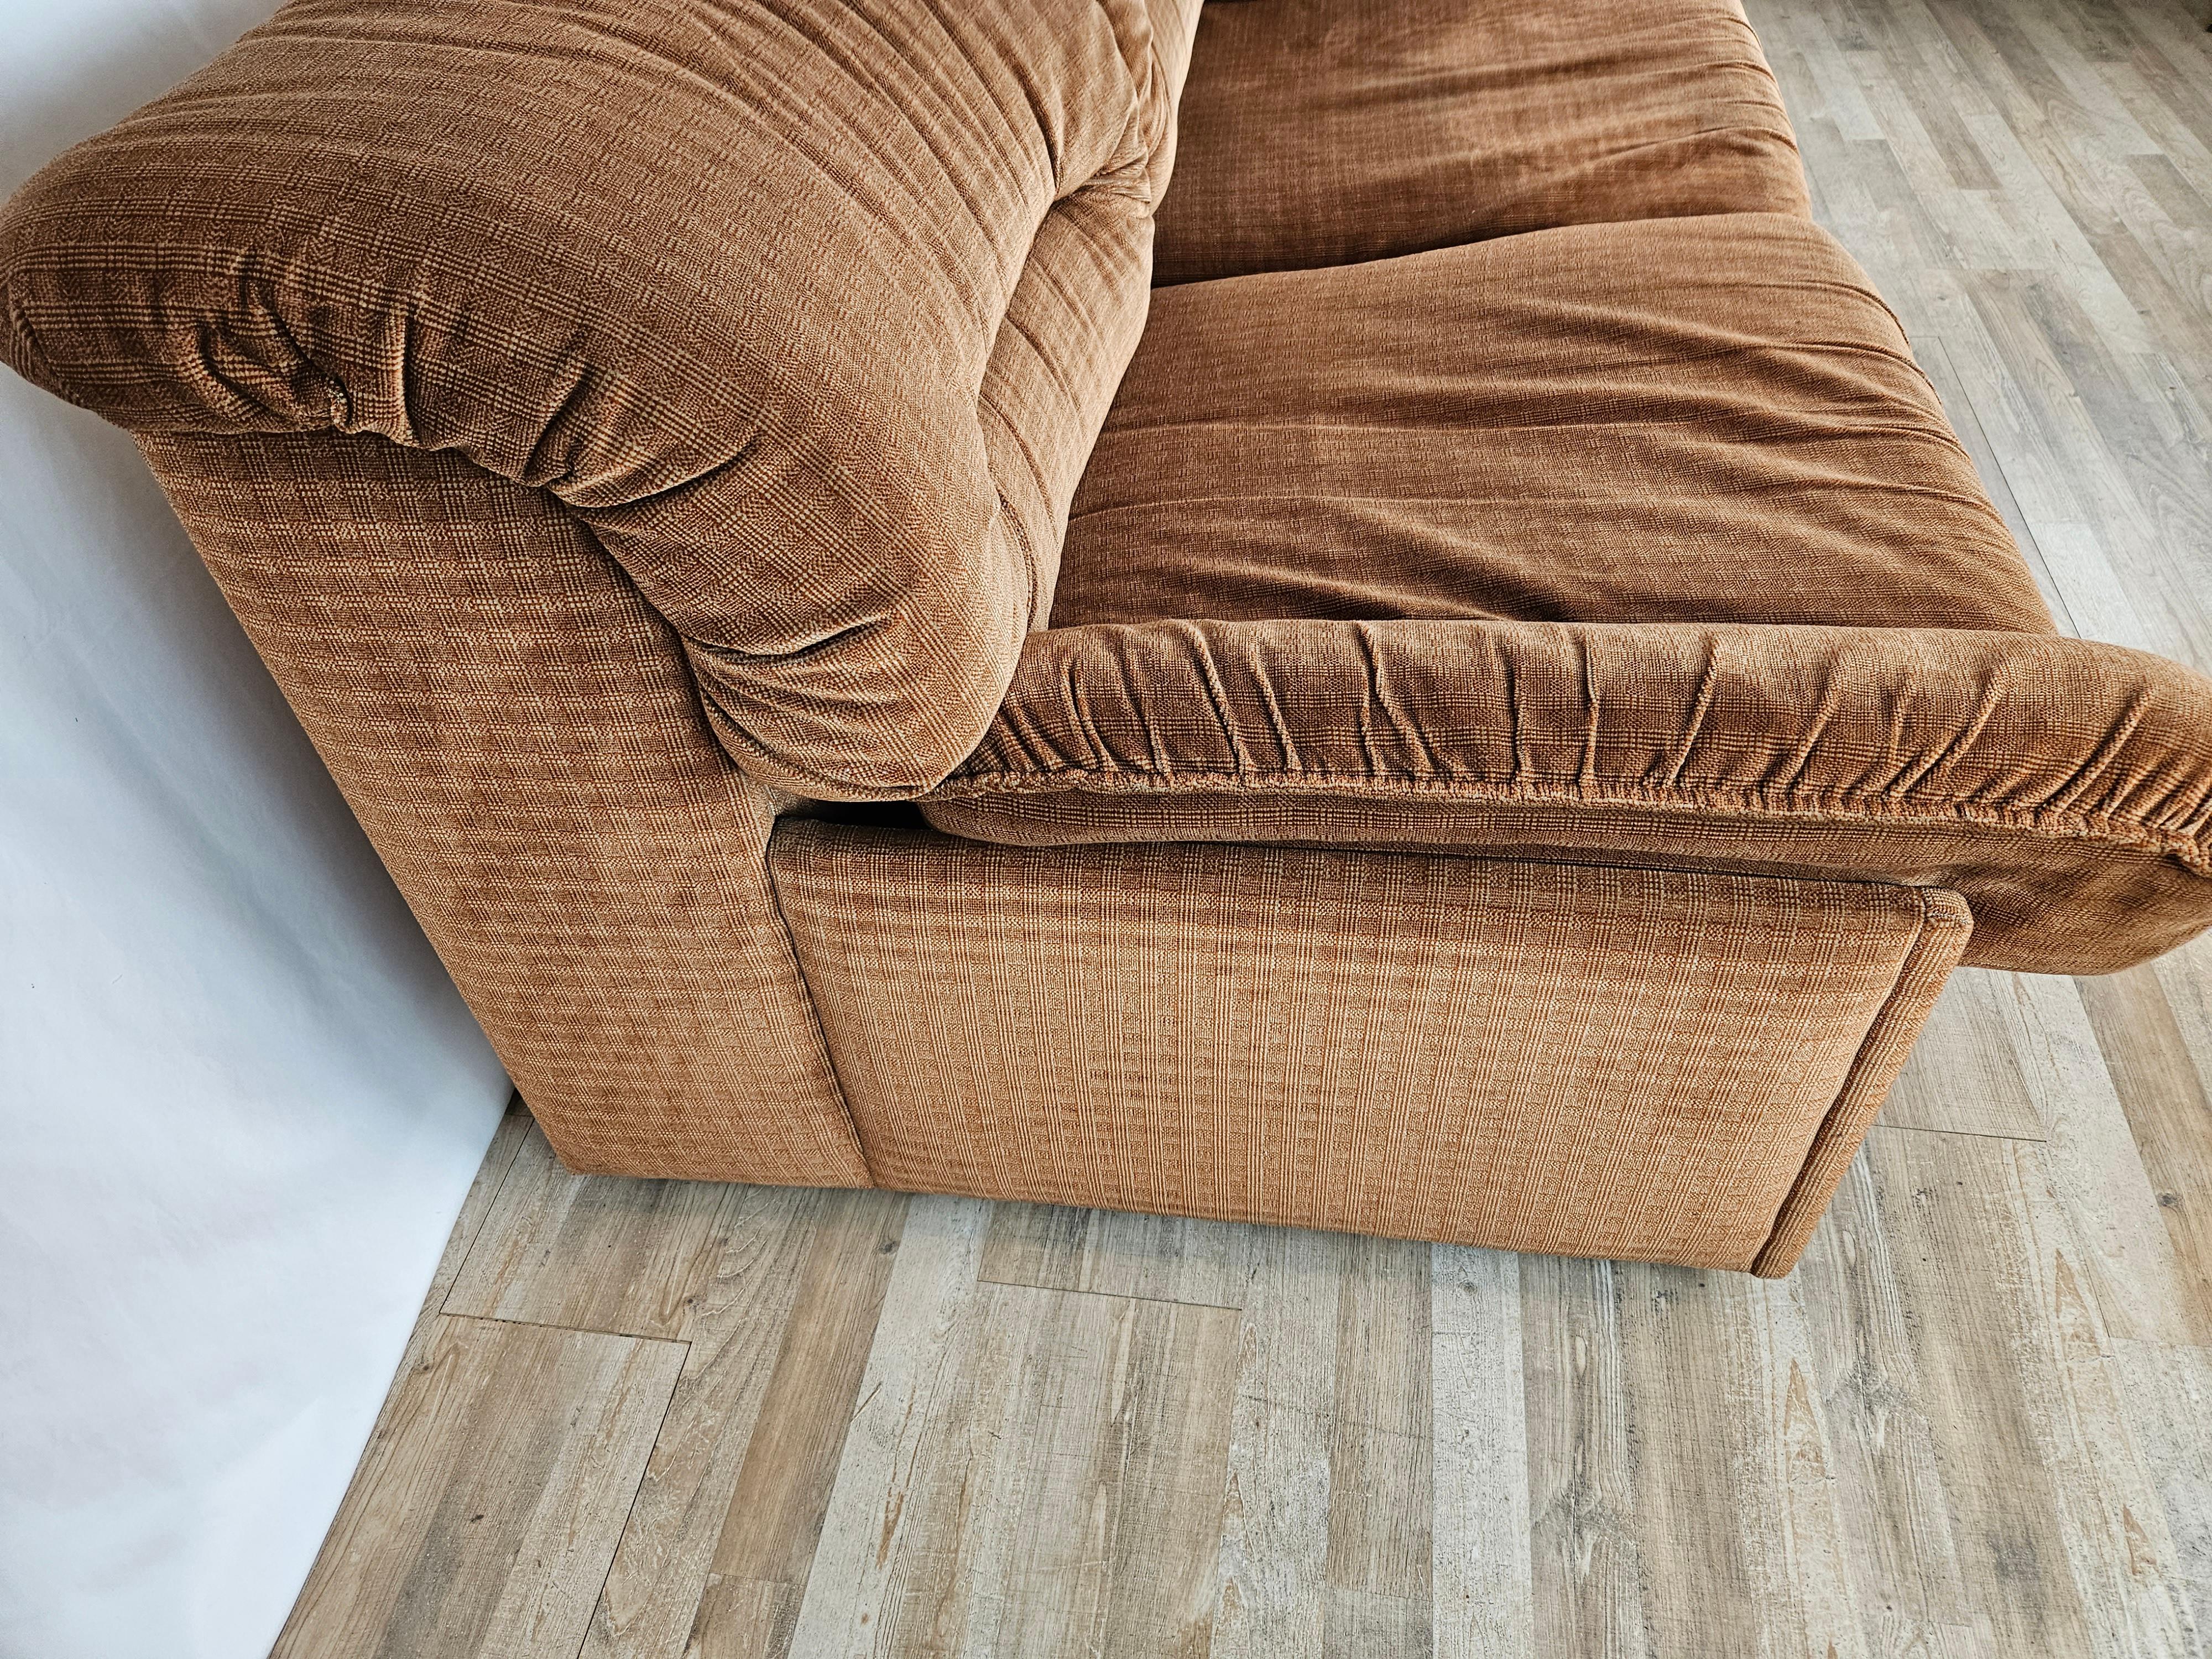 Bequemes Zweisitzer-Sofa, ca. 1970er Jahre, italienische Produktion von Doimo, wie die Markierungen unter den Polstern zeigen.

Das Sofa ist gepolstert und mit hellbraunem Stoff bezogen und hat zwei Kissen auf dem Sitz mit Seitenlehnen.

Der